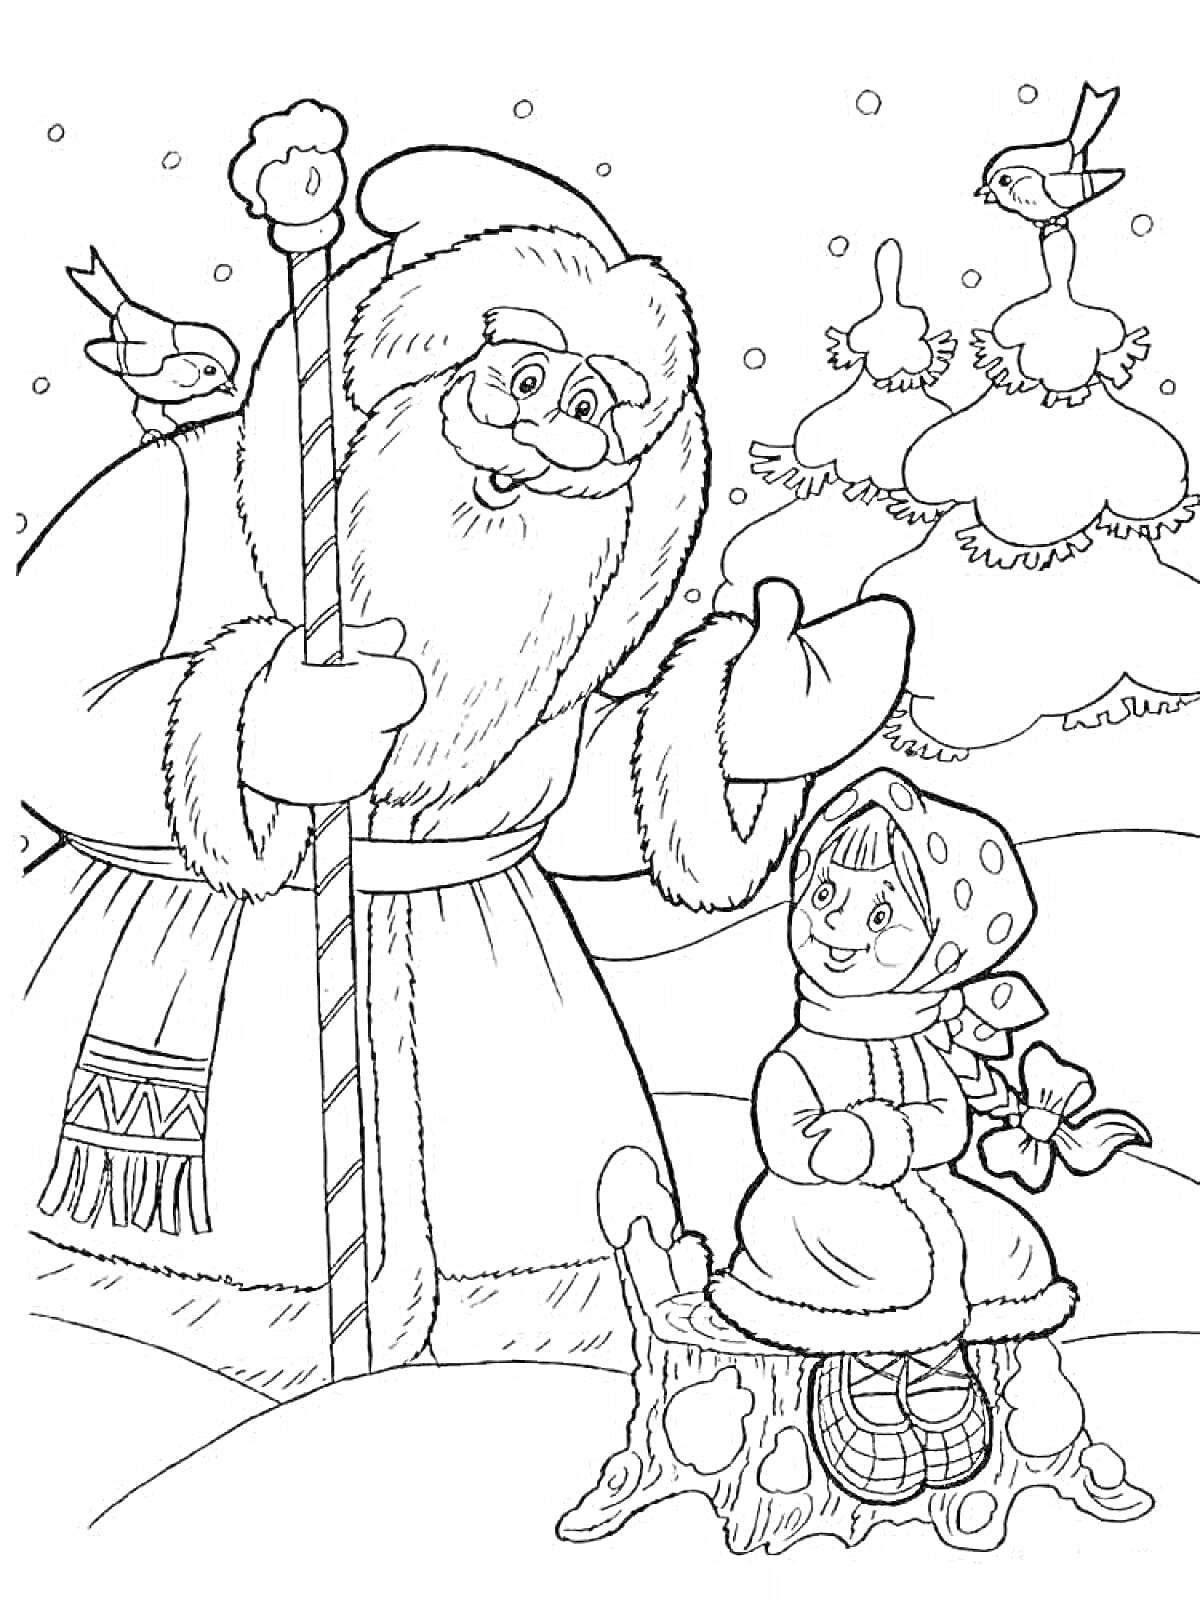 Дед Мороз с посохом и девочка в платке на пеньке, зимняя сцена с елью и птицами